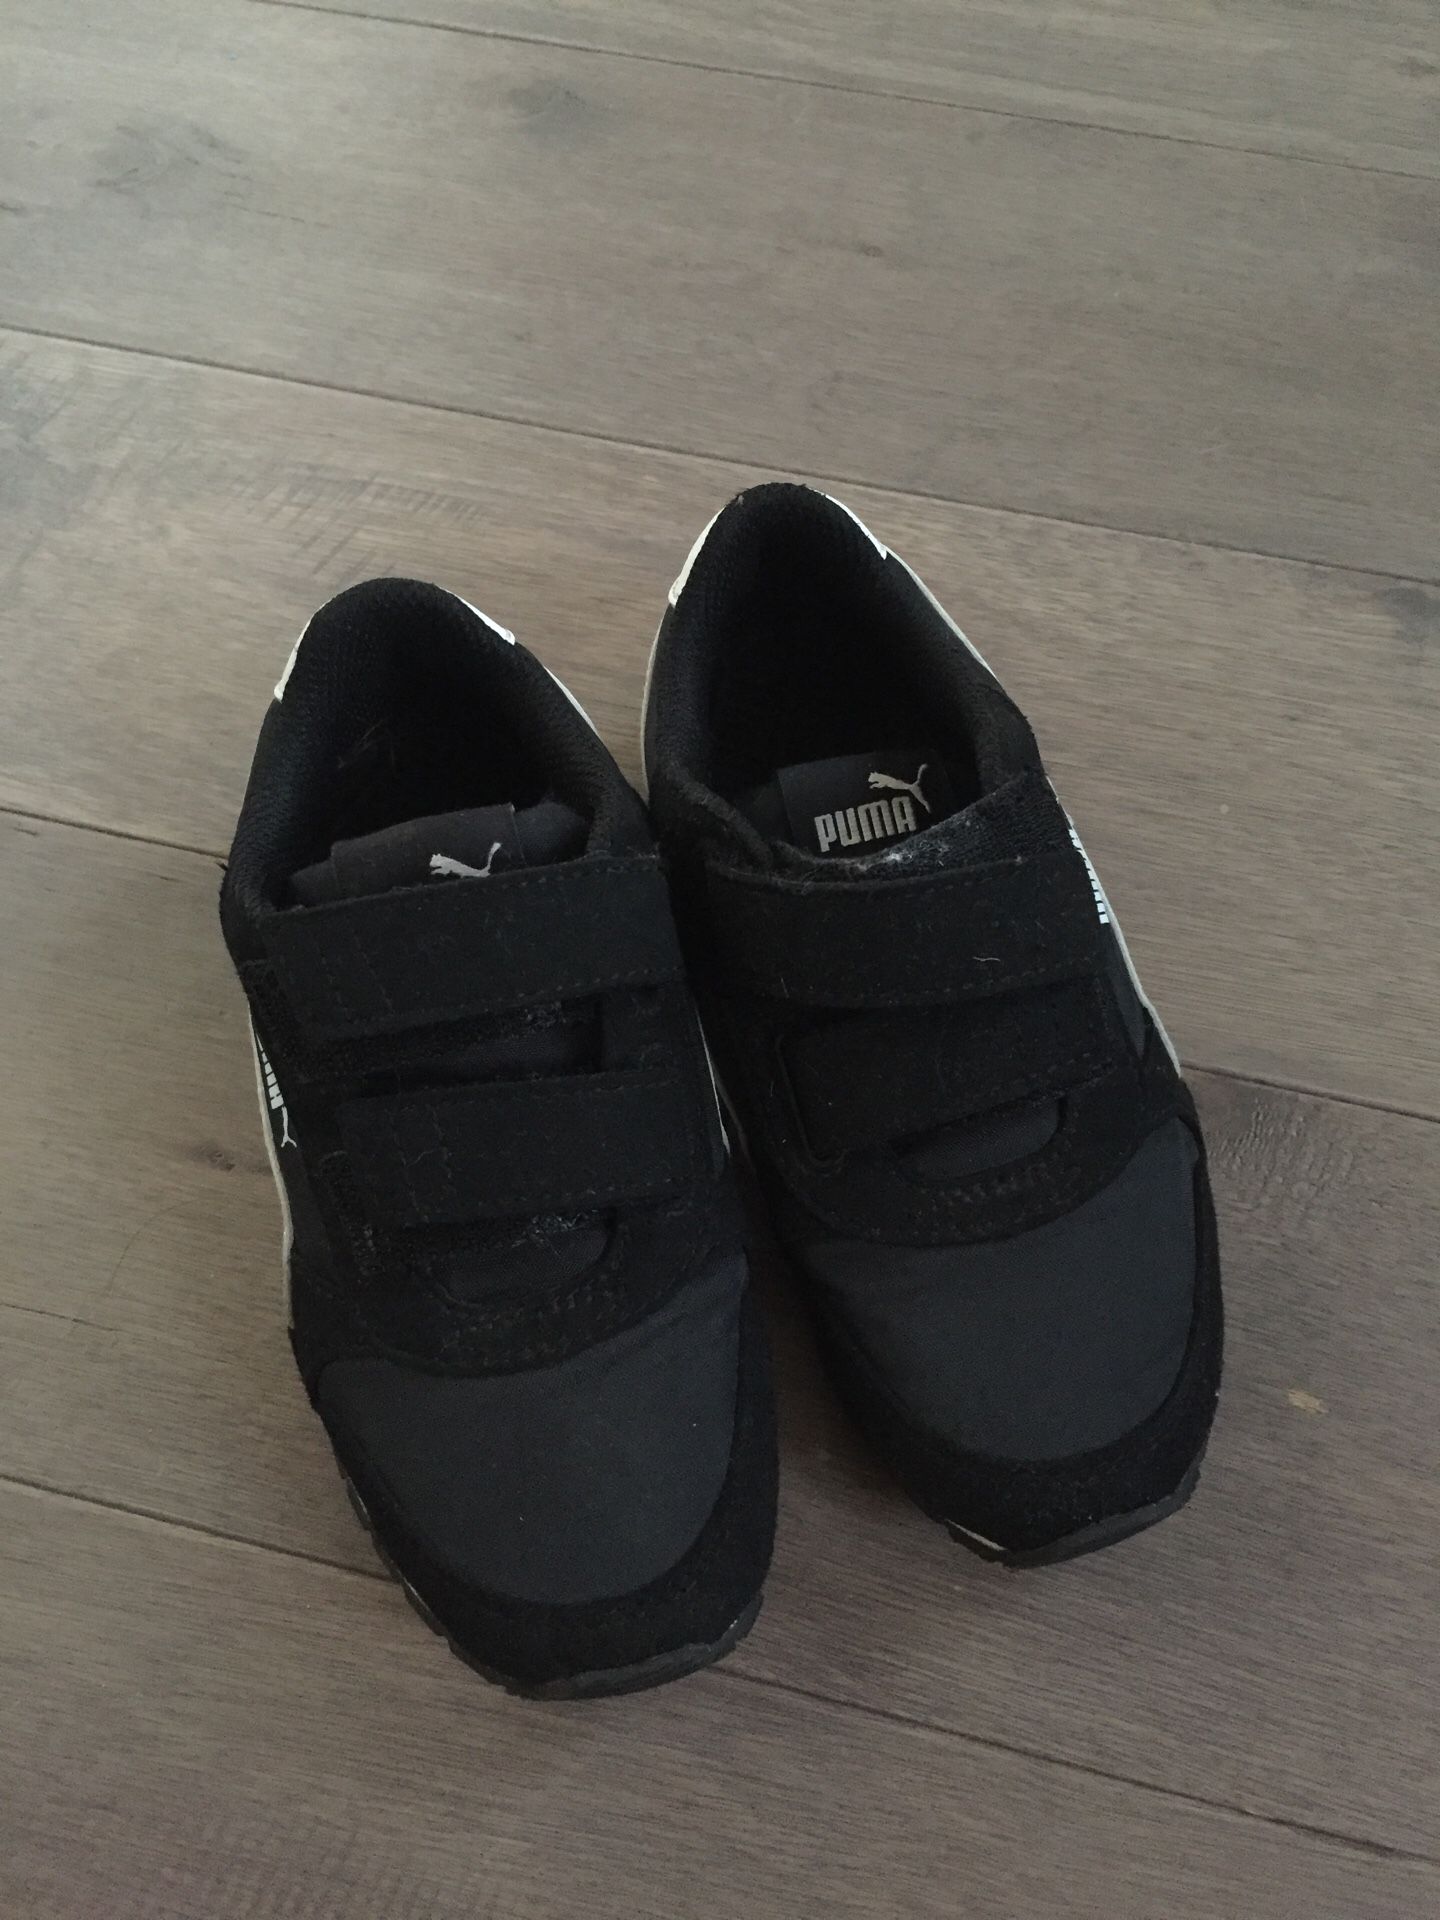 Kid Puma shoes, size 11